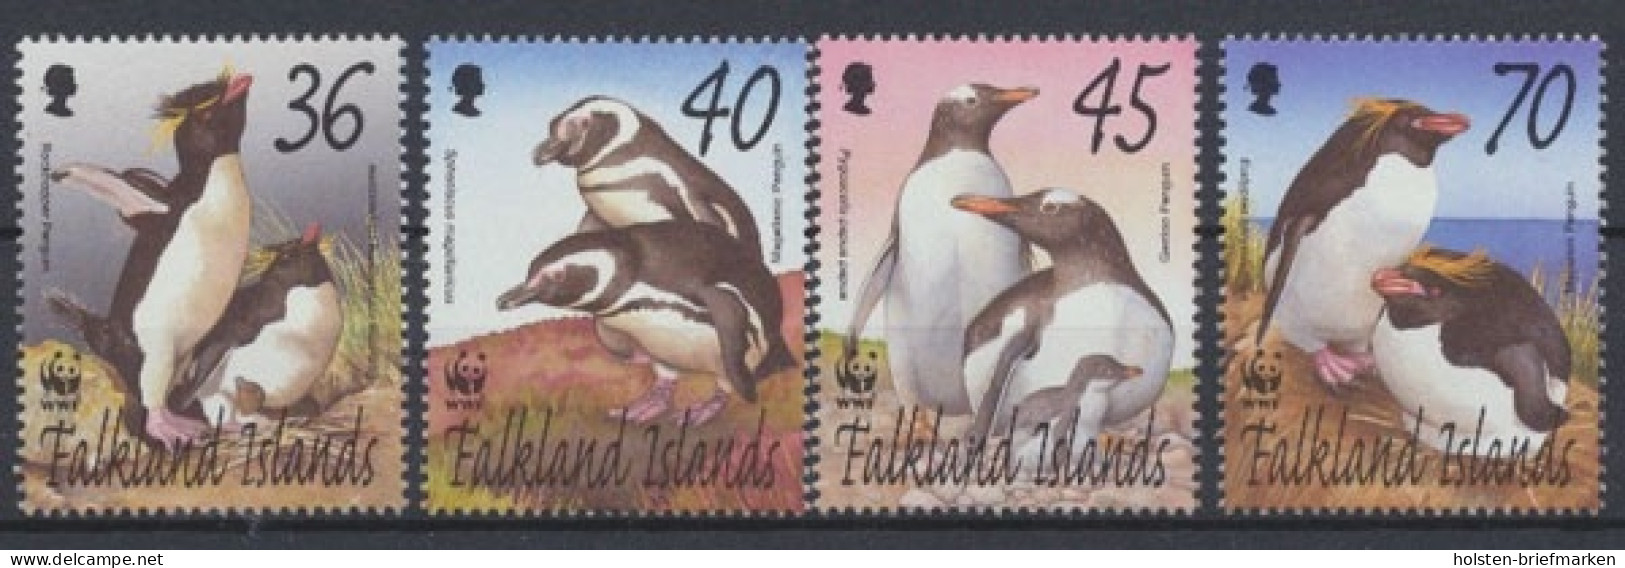 Falklandinseln, Michel Nr. 855-858, Postfrisch/MNH - Falkland Islands